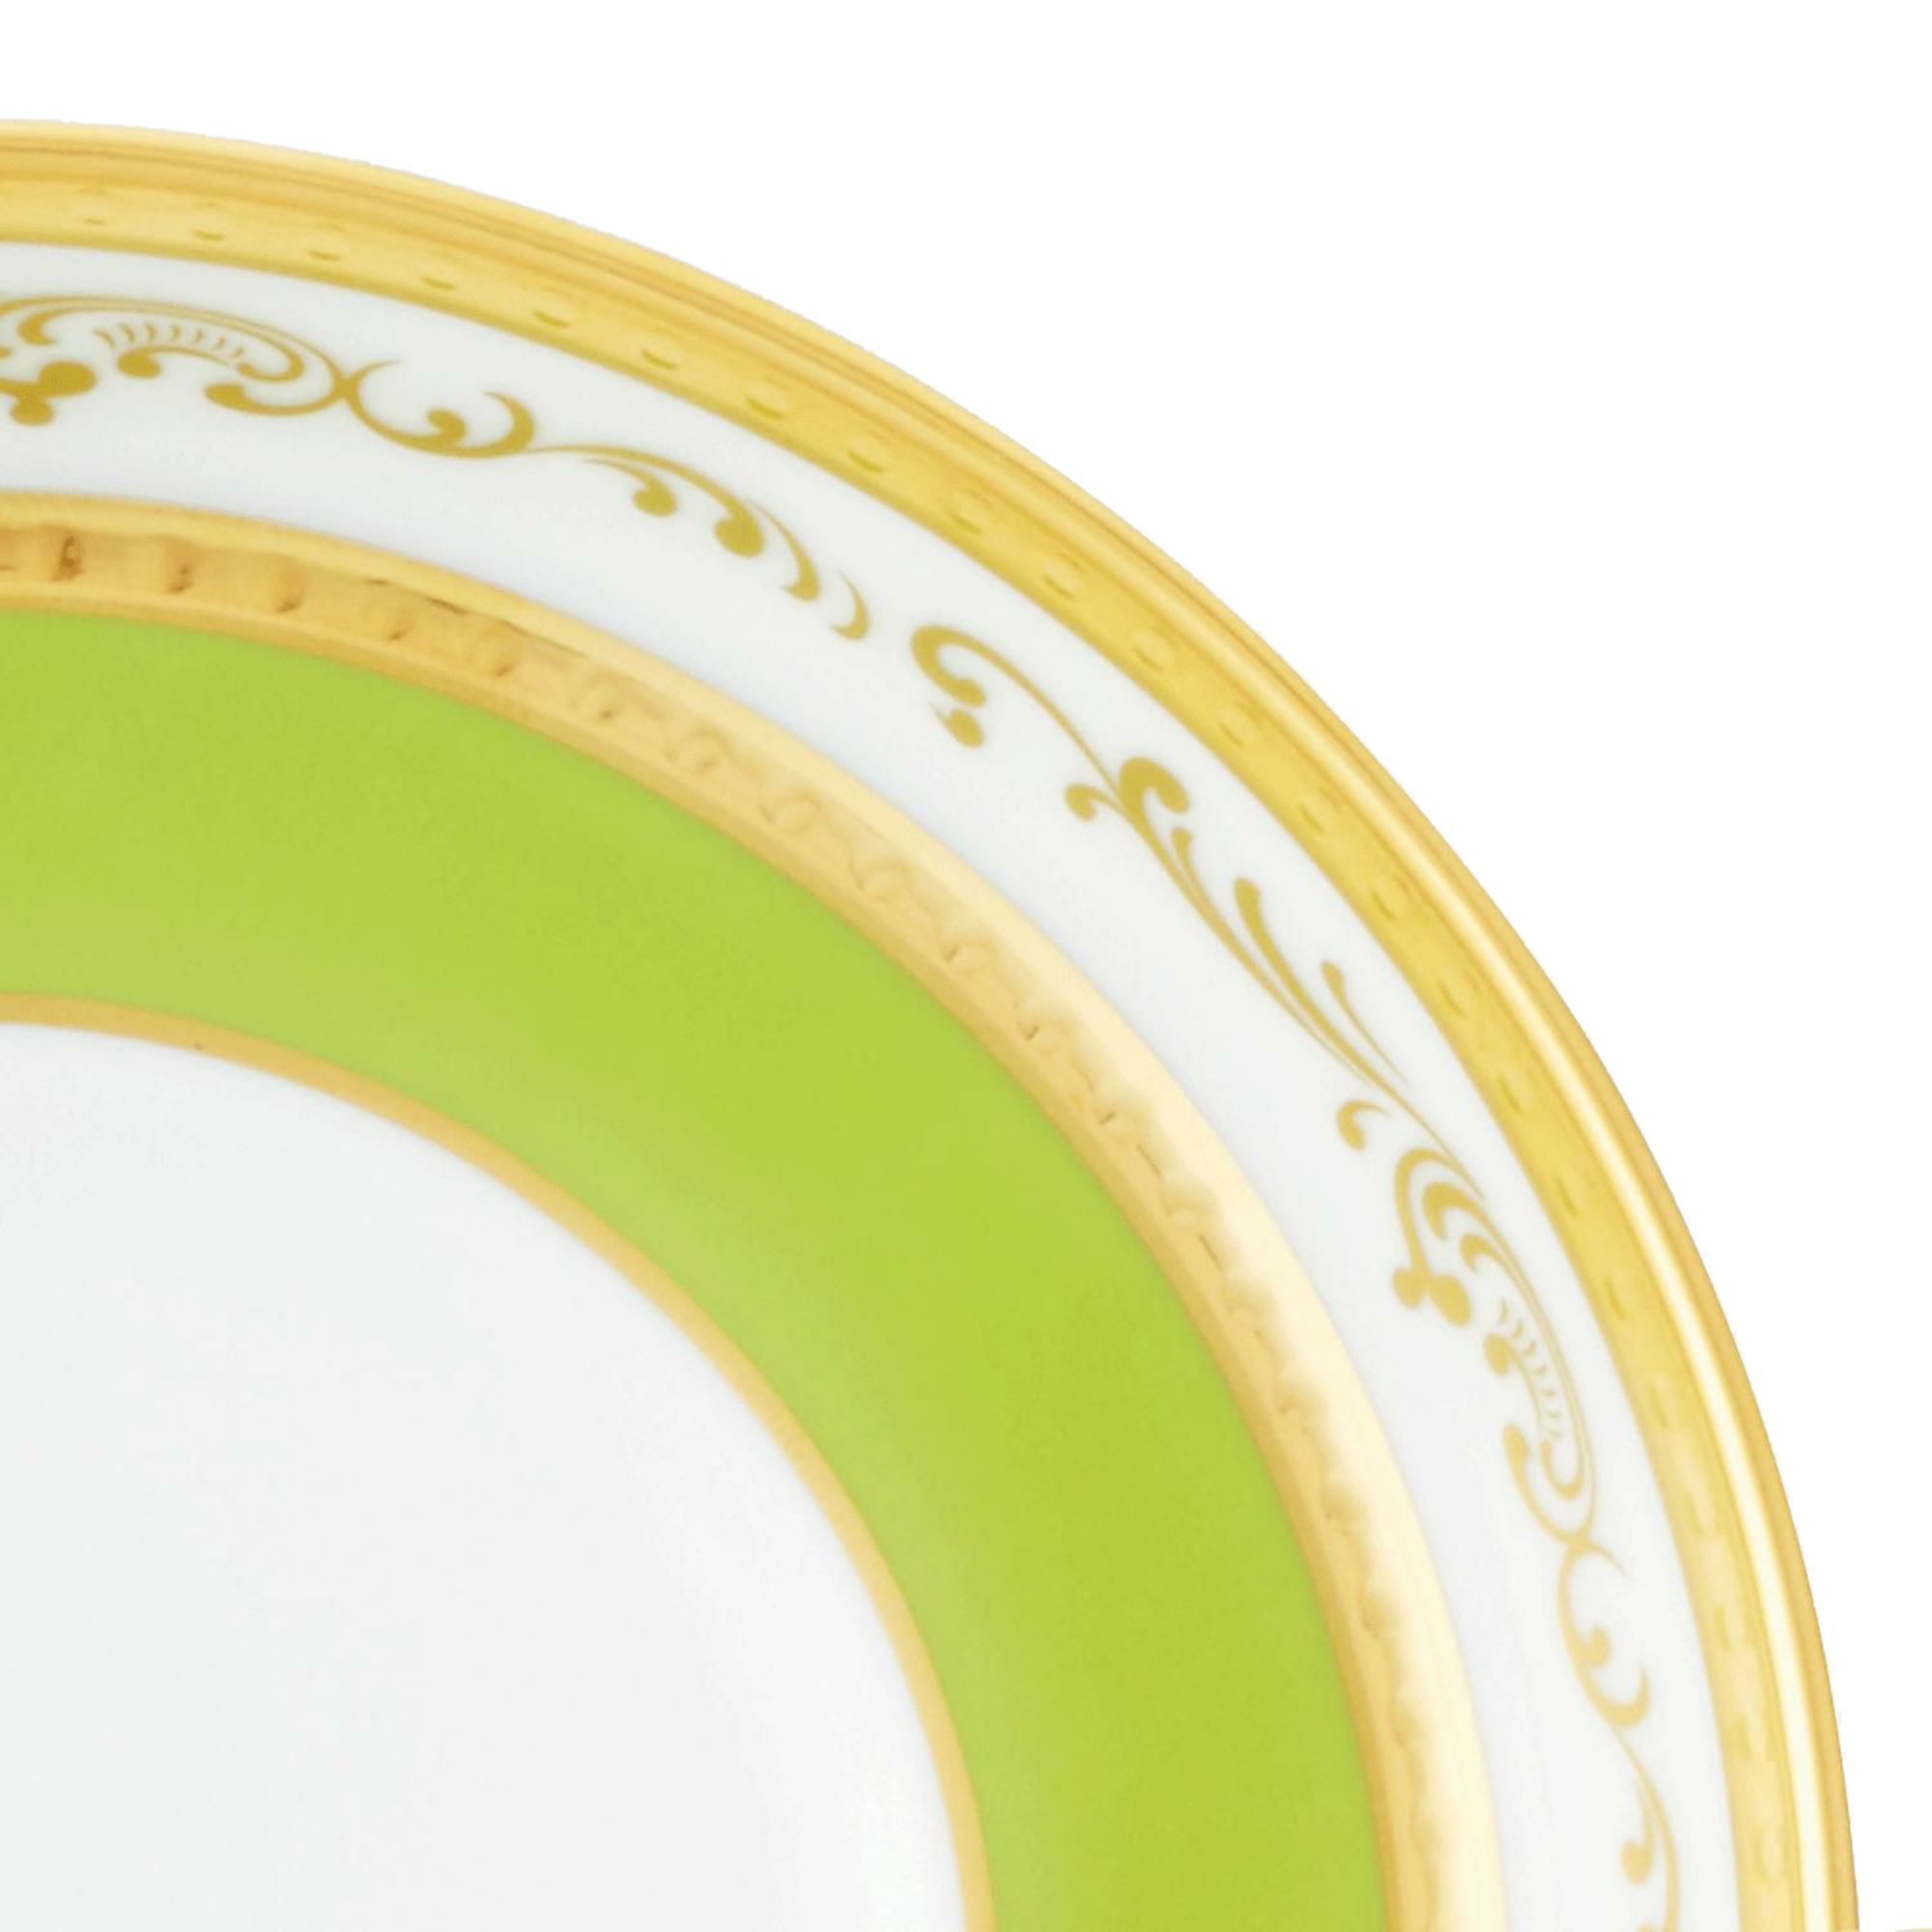  Chén trà (tách trà) kèm đĩa lót dung tích 160ml sứ trắng cao cấp | The Homage Collection H-770J-T2402 